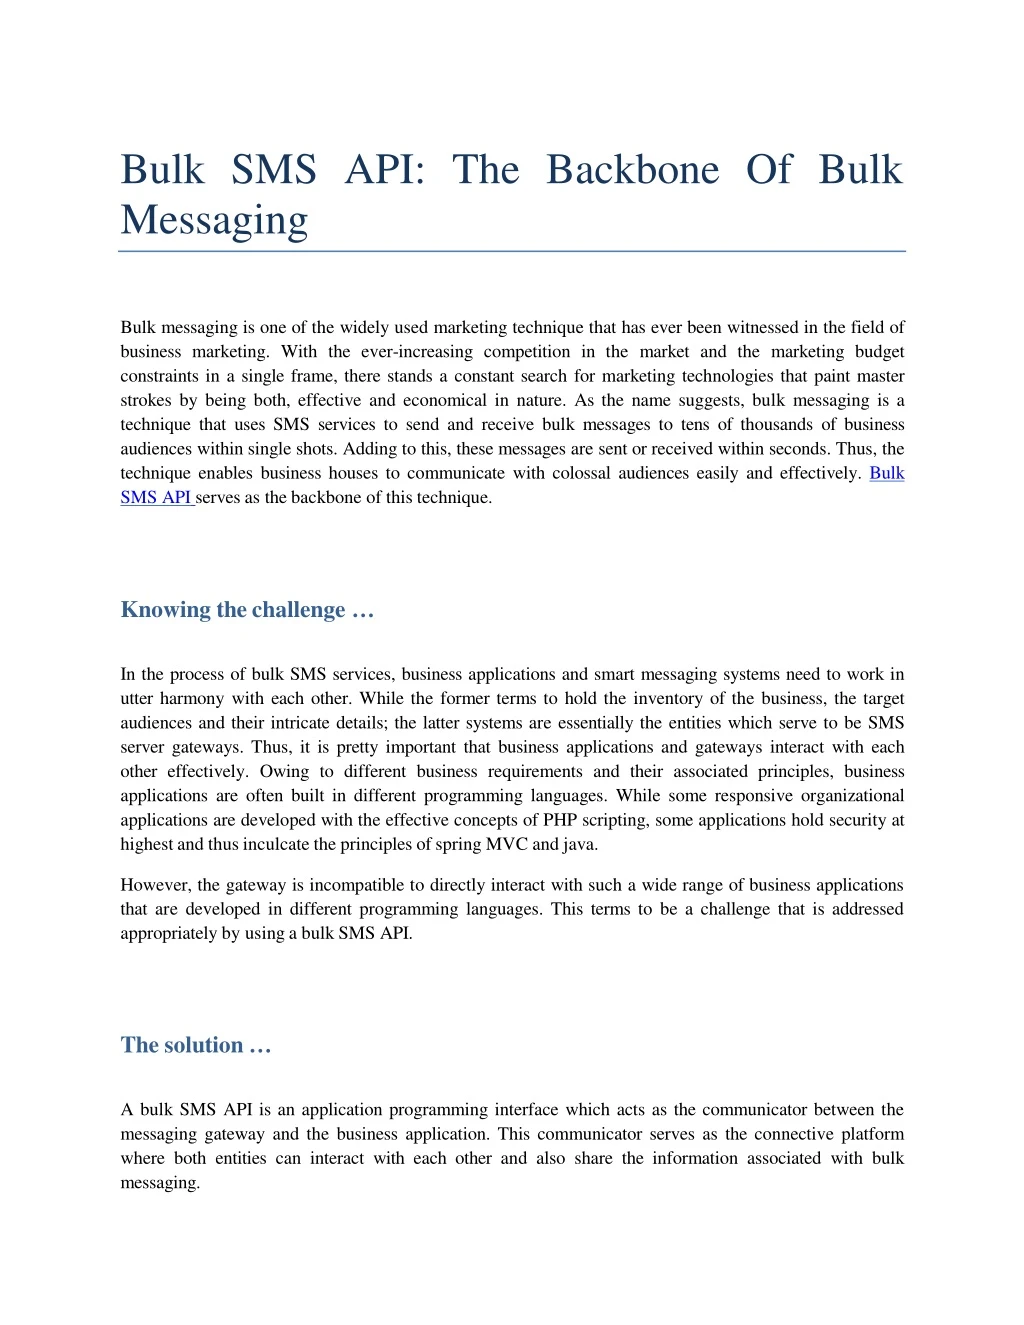 bulk s m s api the backbone of bulk messaging